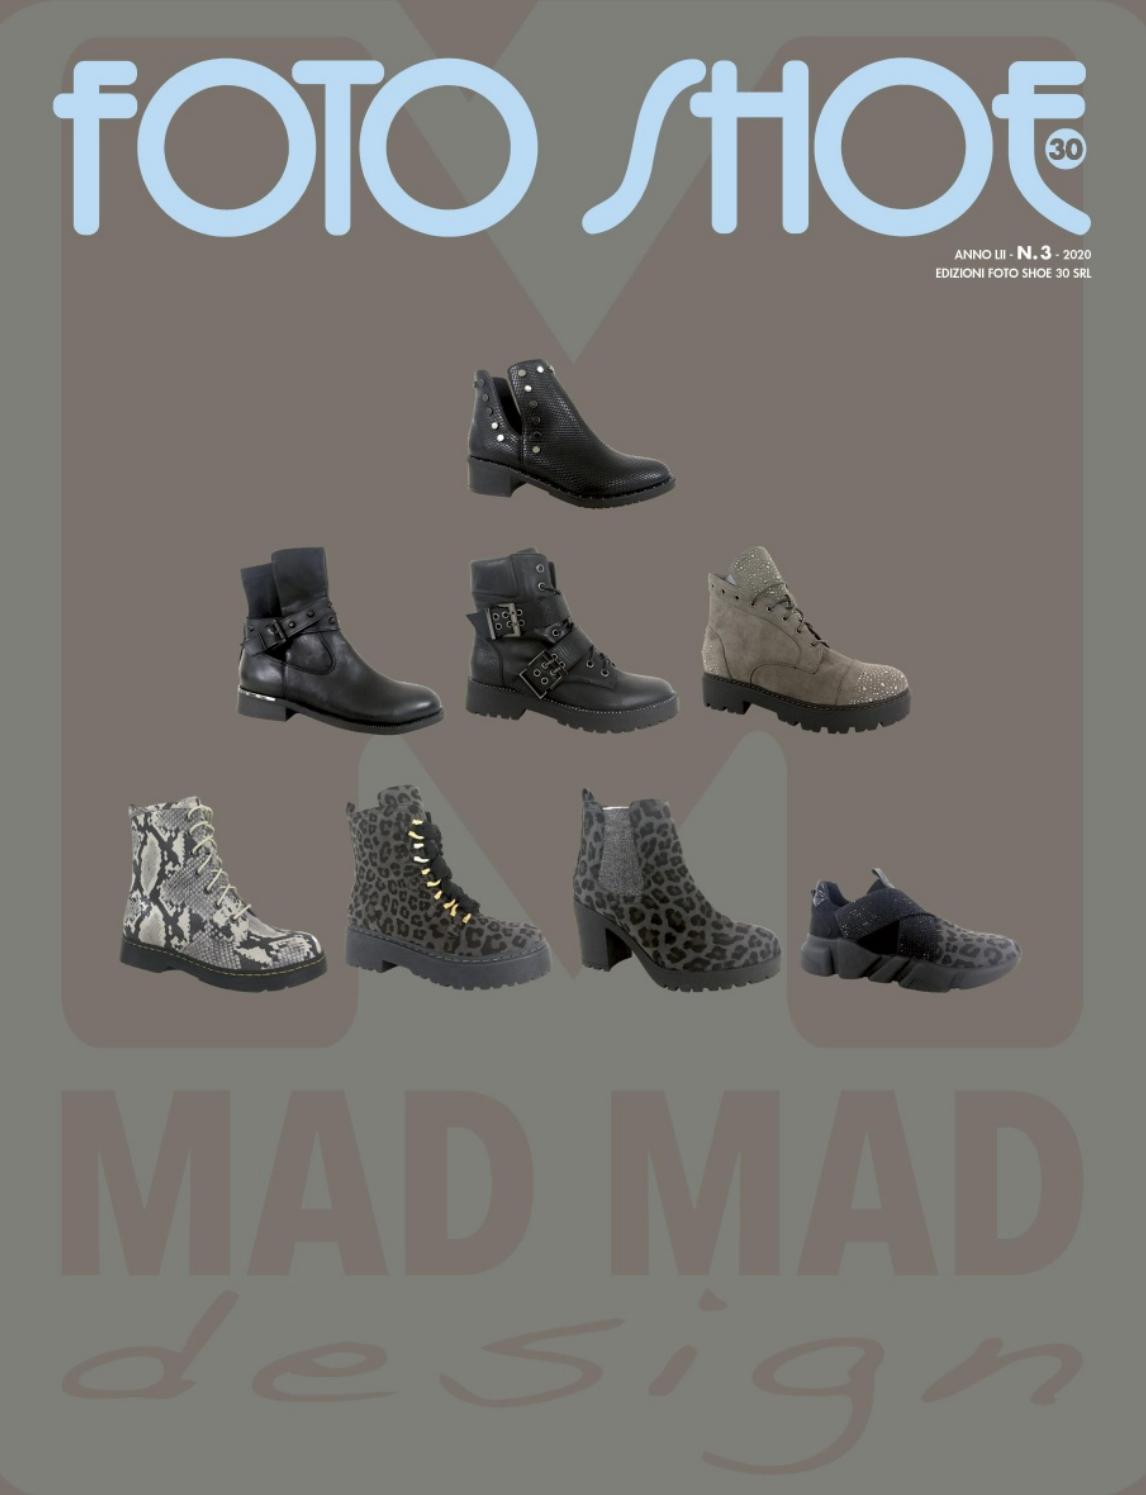 《Foto Shoe-30》意大利专业鞋款书籍2020年03月号